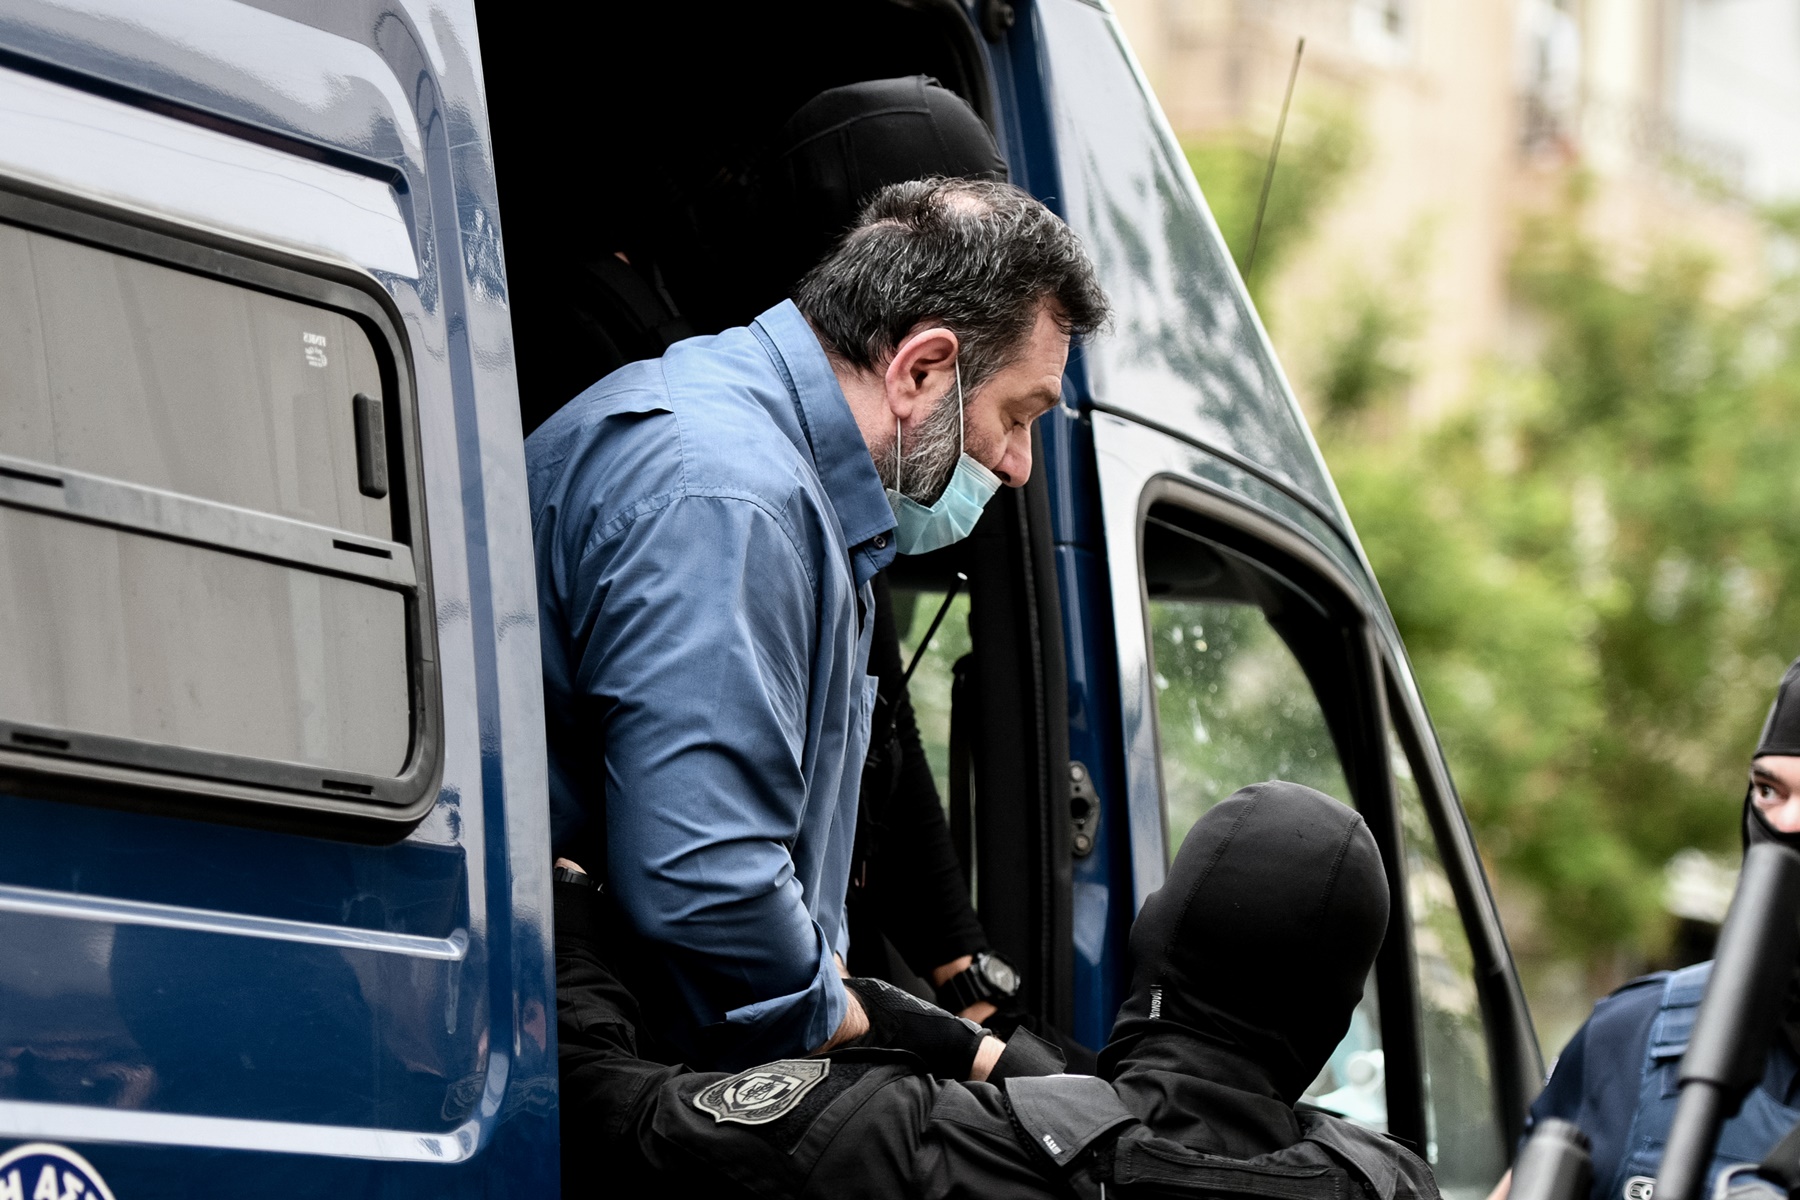 Γιάννης Λαγός φυλακή: Στην Αθήνα ο χρυσαυγίτης ευρωβουλευτής